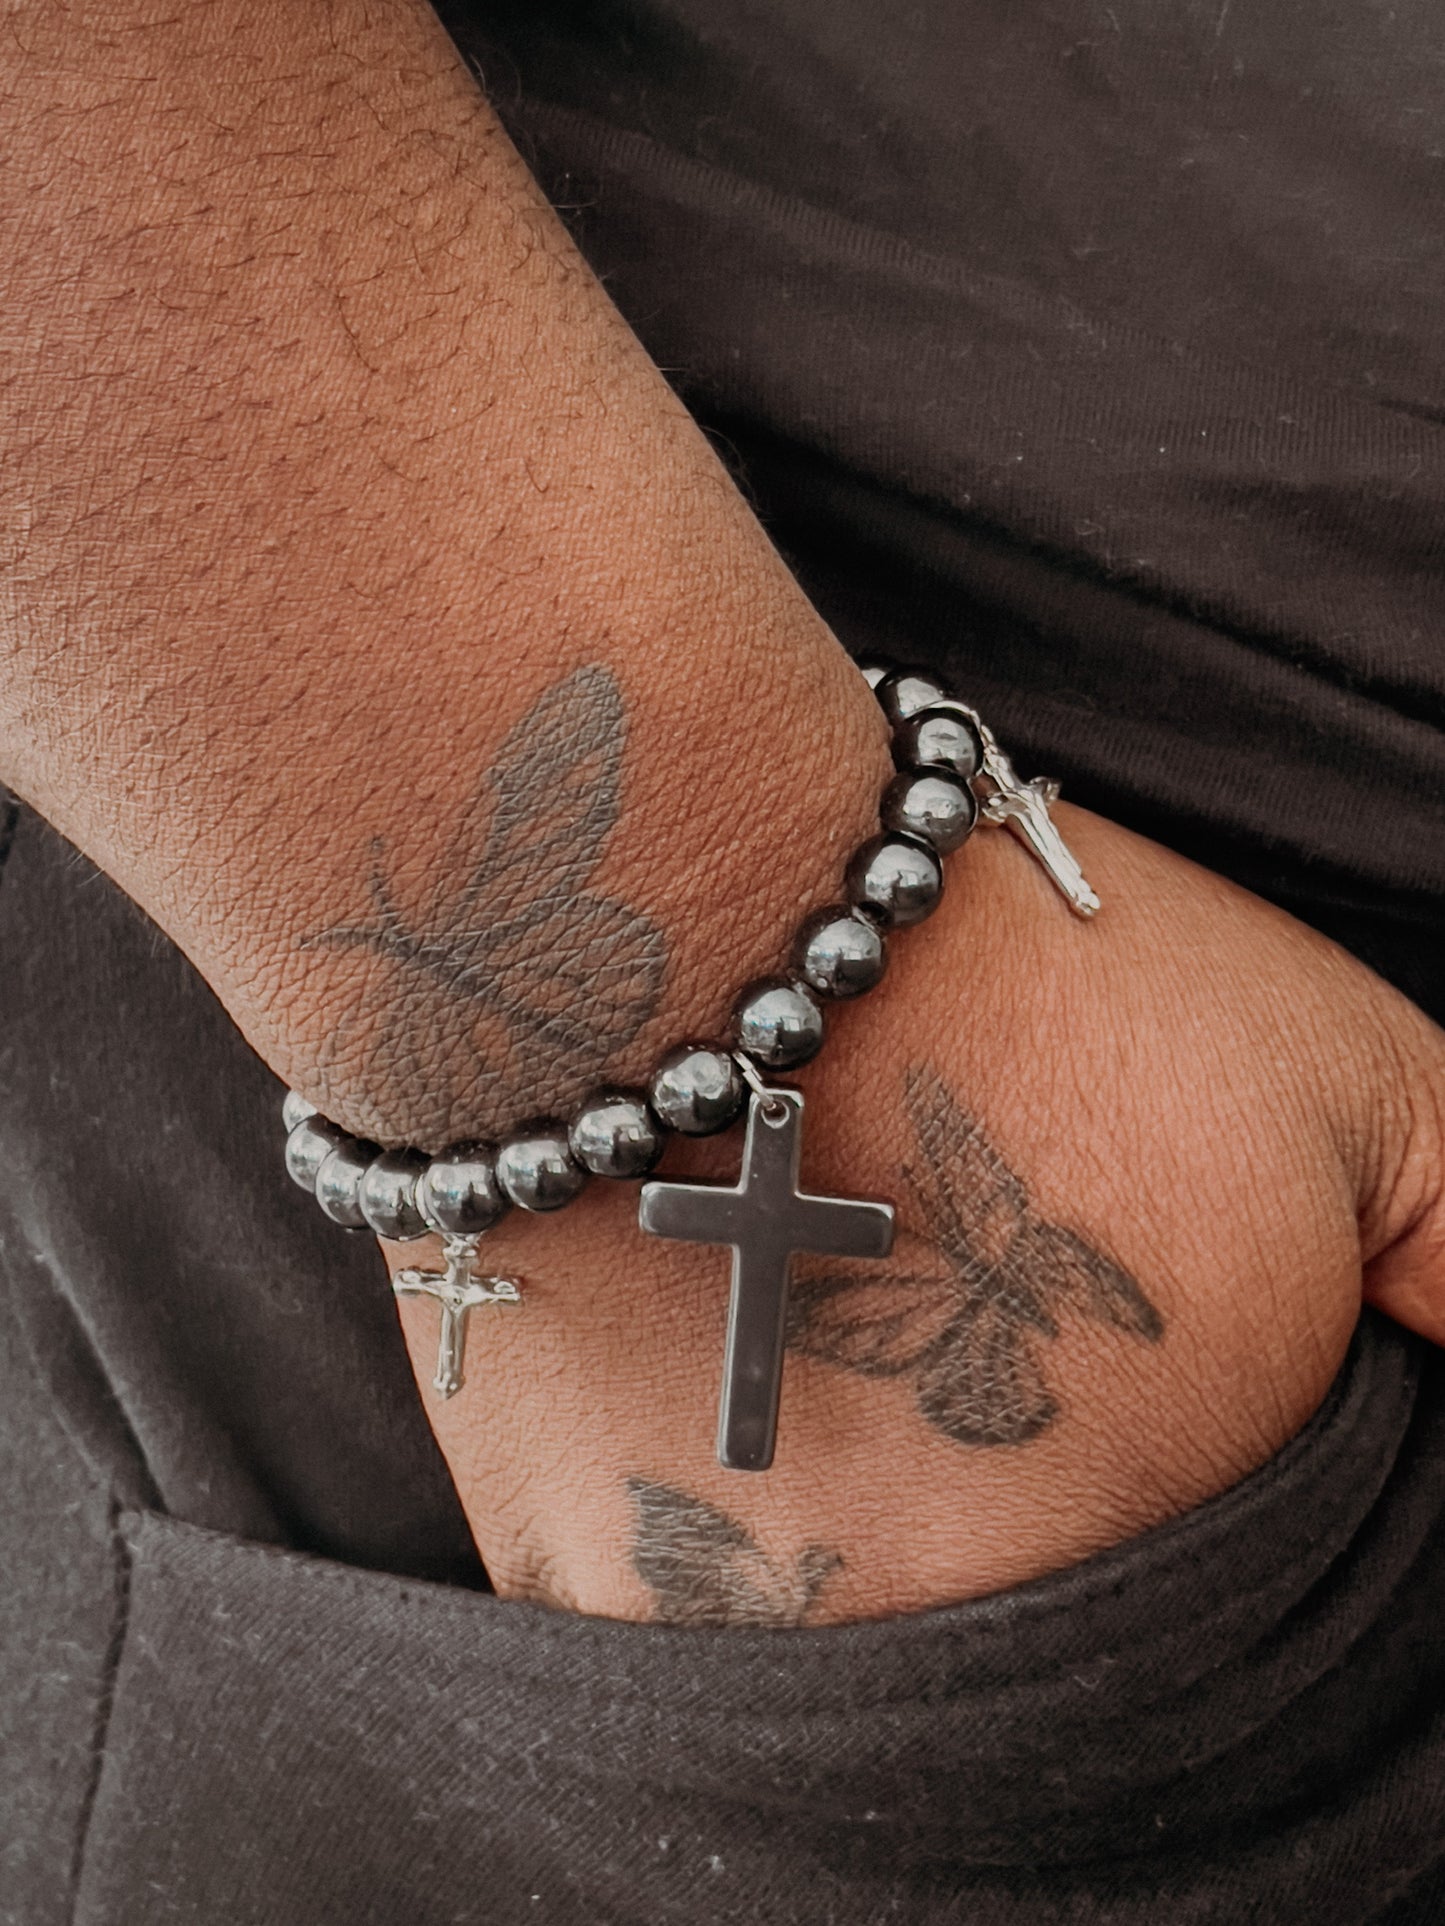 Christian Cross Magnet Bracelet